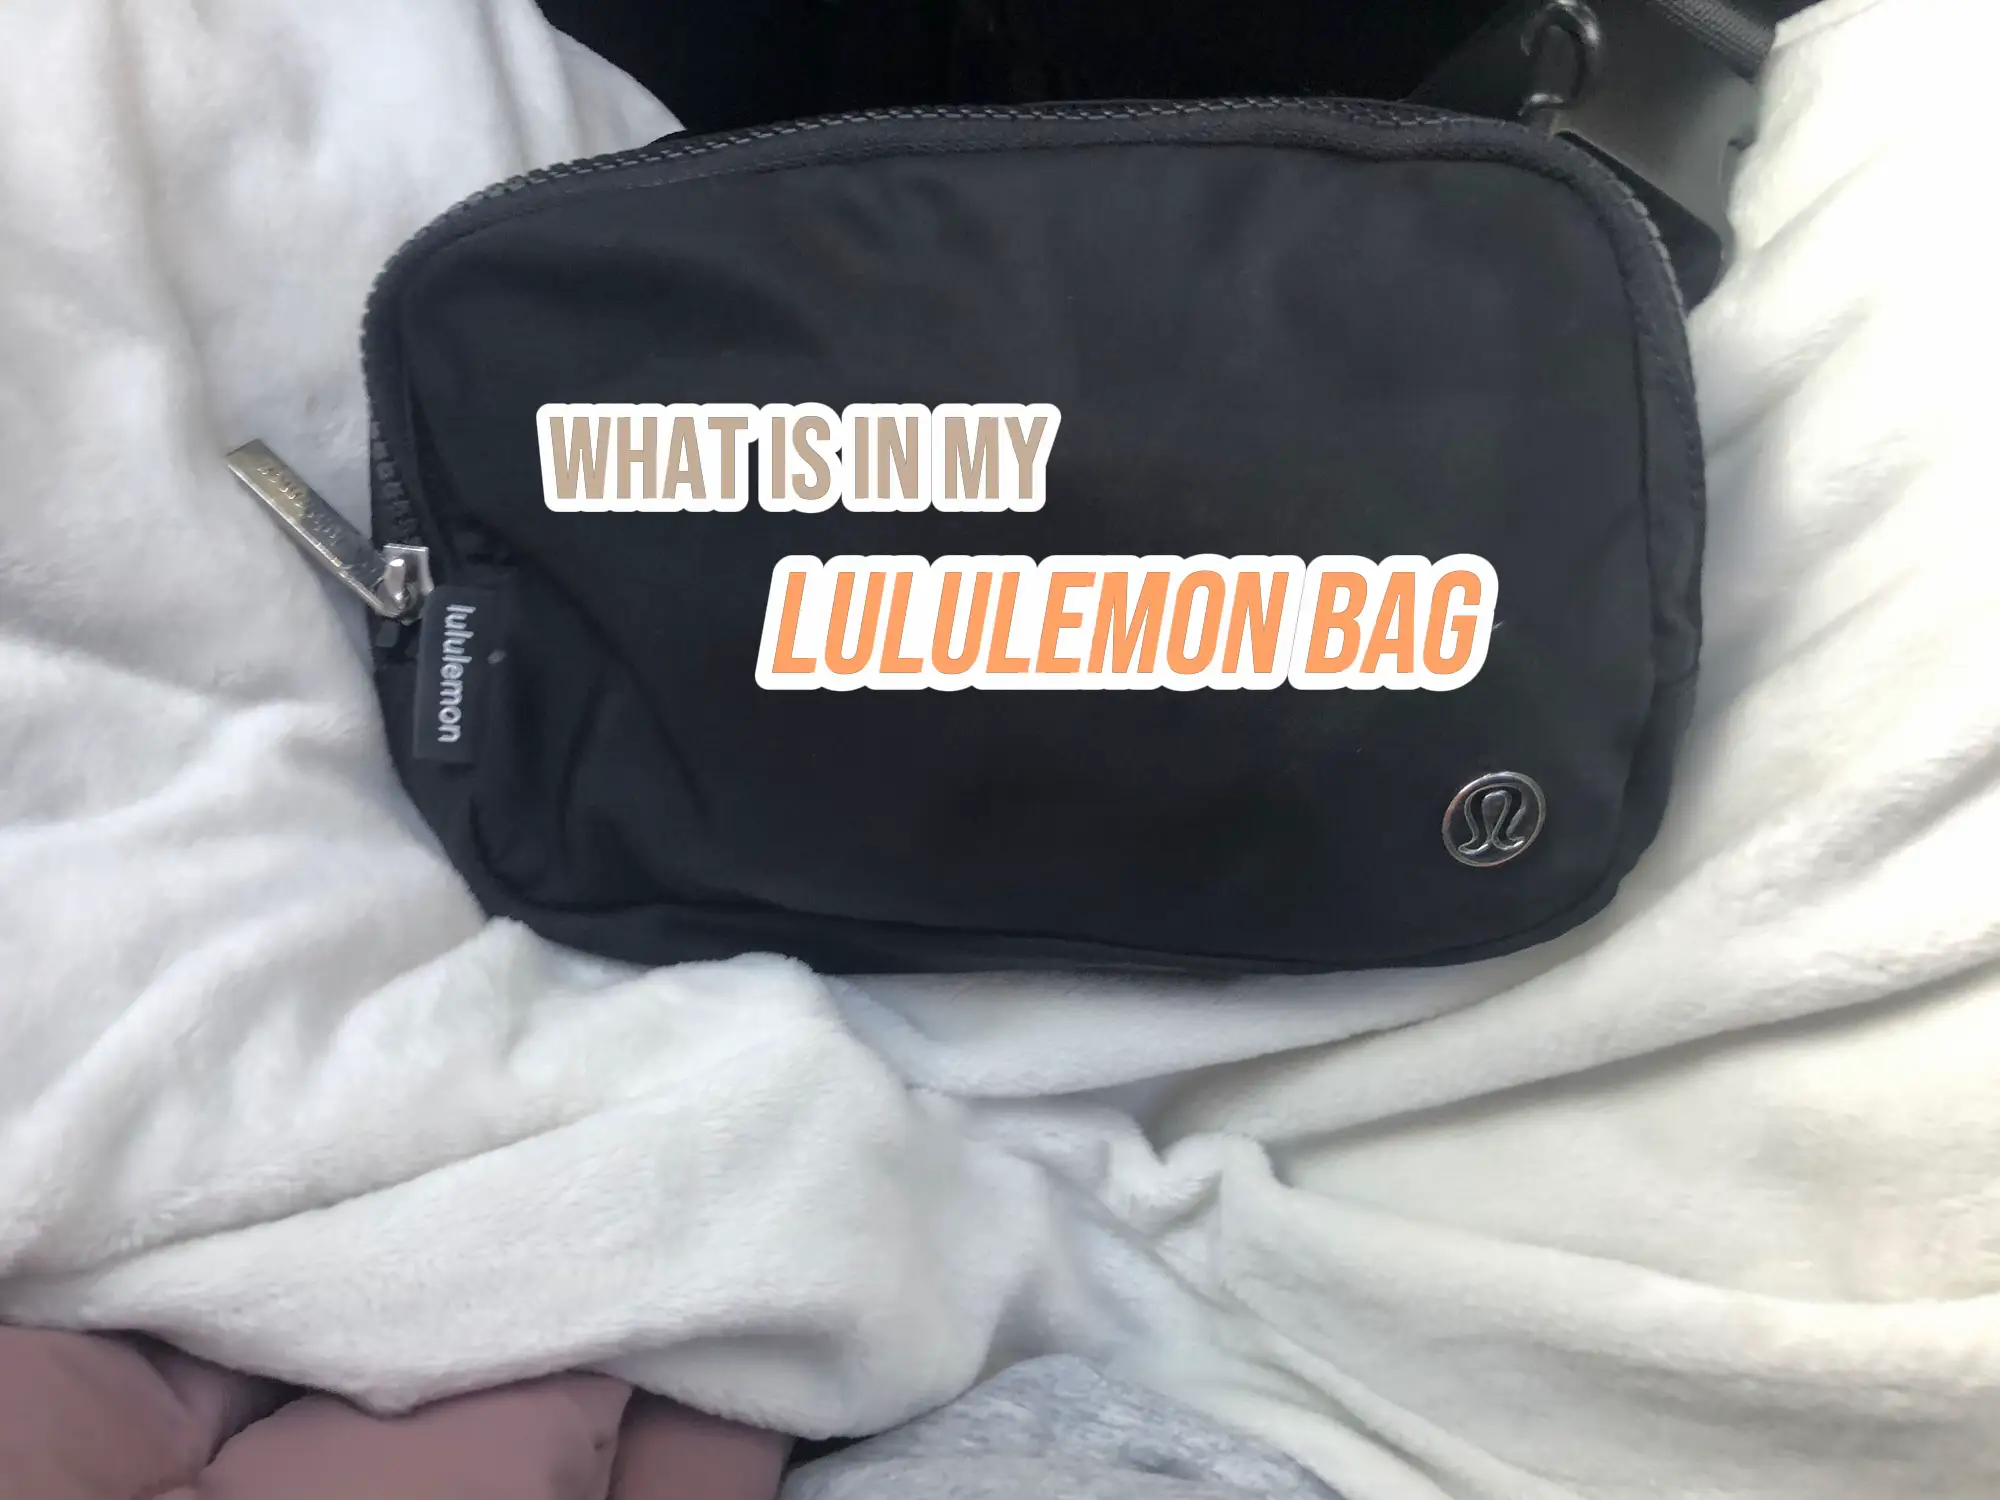 Venelpt lululemon-look a like Fast Track bag 